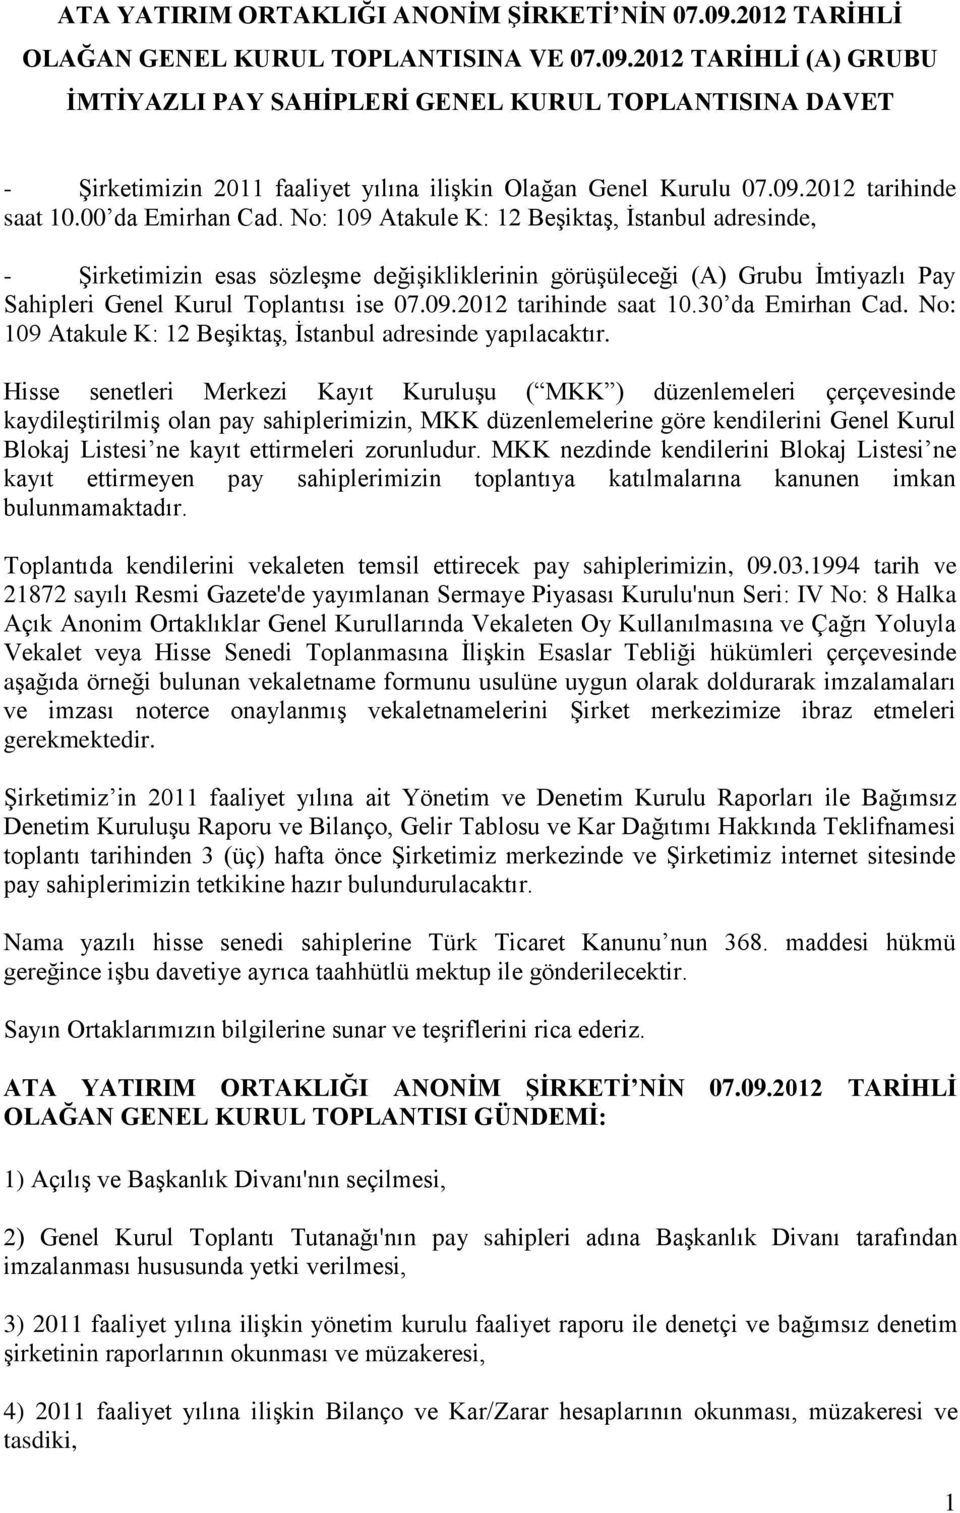 No: 109 Atakule K: 12 Beşiktaş, İstanbul adresinde, - Şirketimizin esas sözleşme değişikliklerinin görüşüleceği (A) Grubu İmtiyazlı Pay Sahipleri Genel Kurul Toplantısı ise 07.09.2012 tarihinde saat 10.